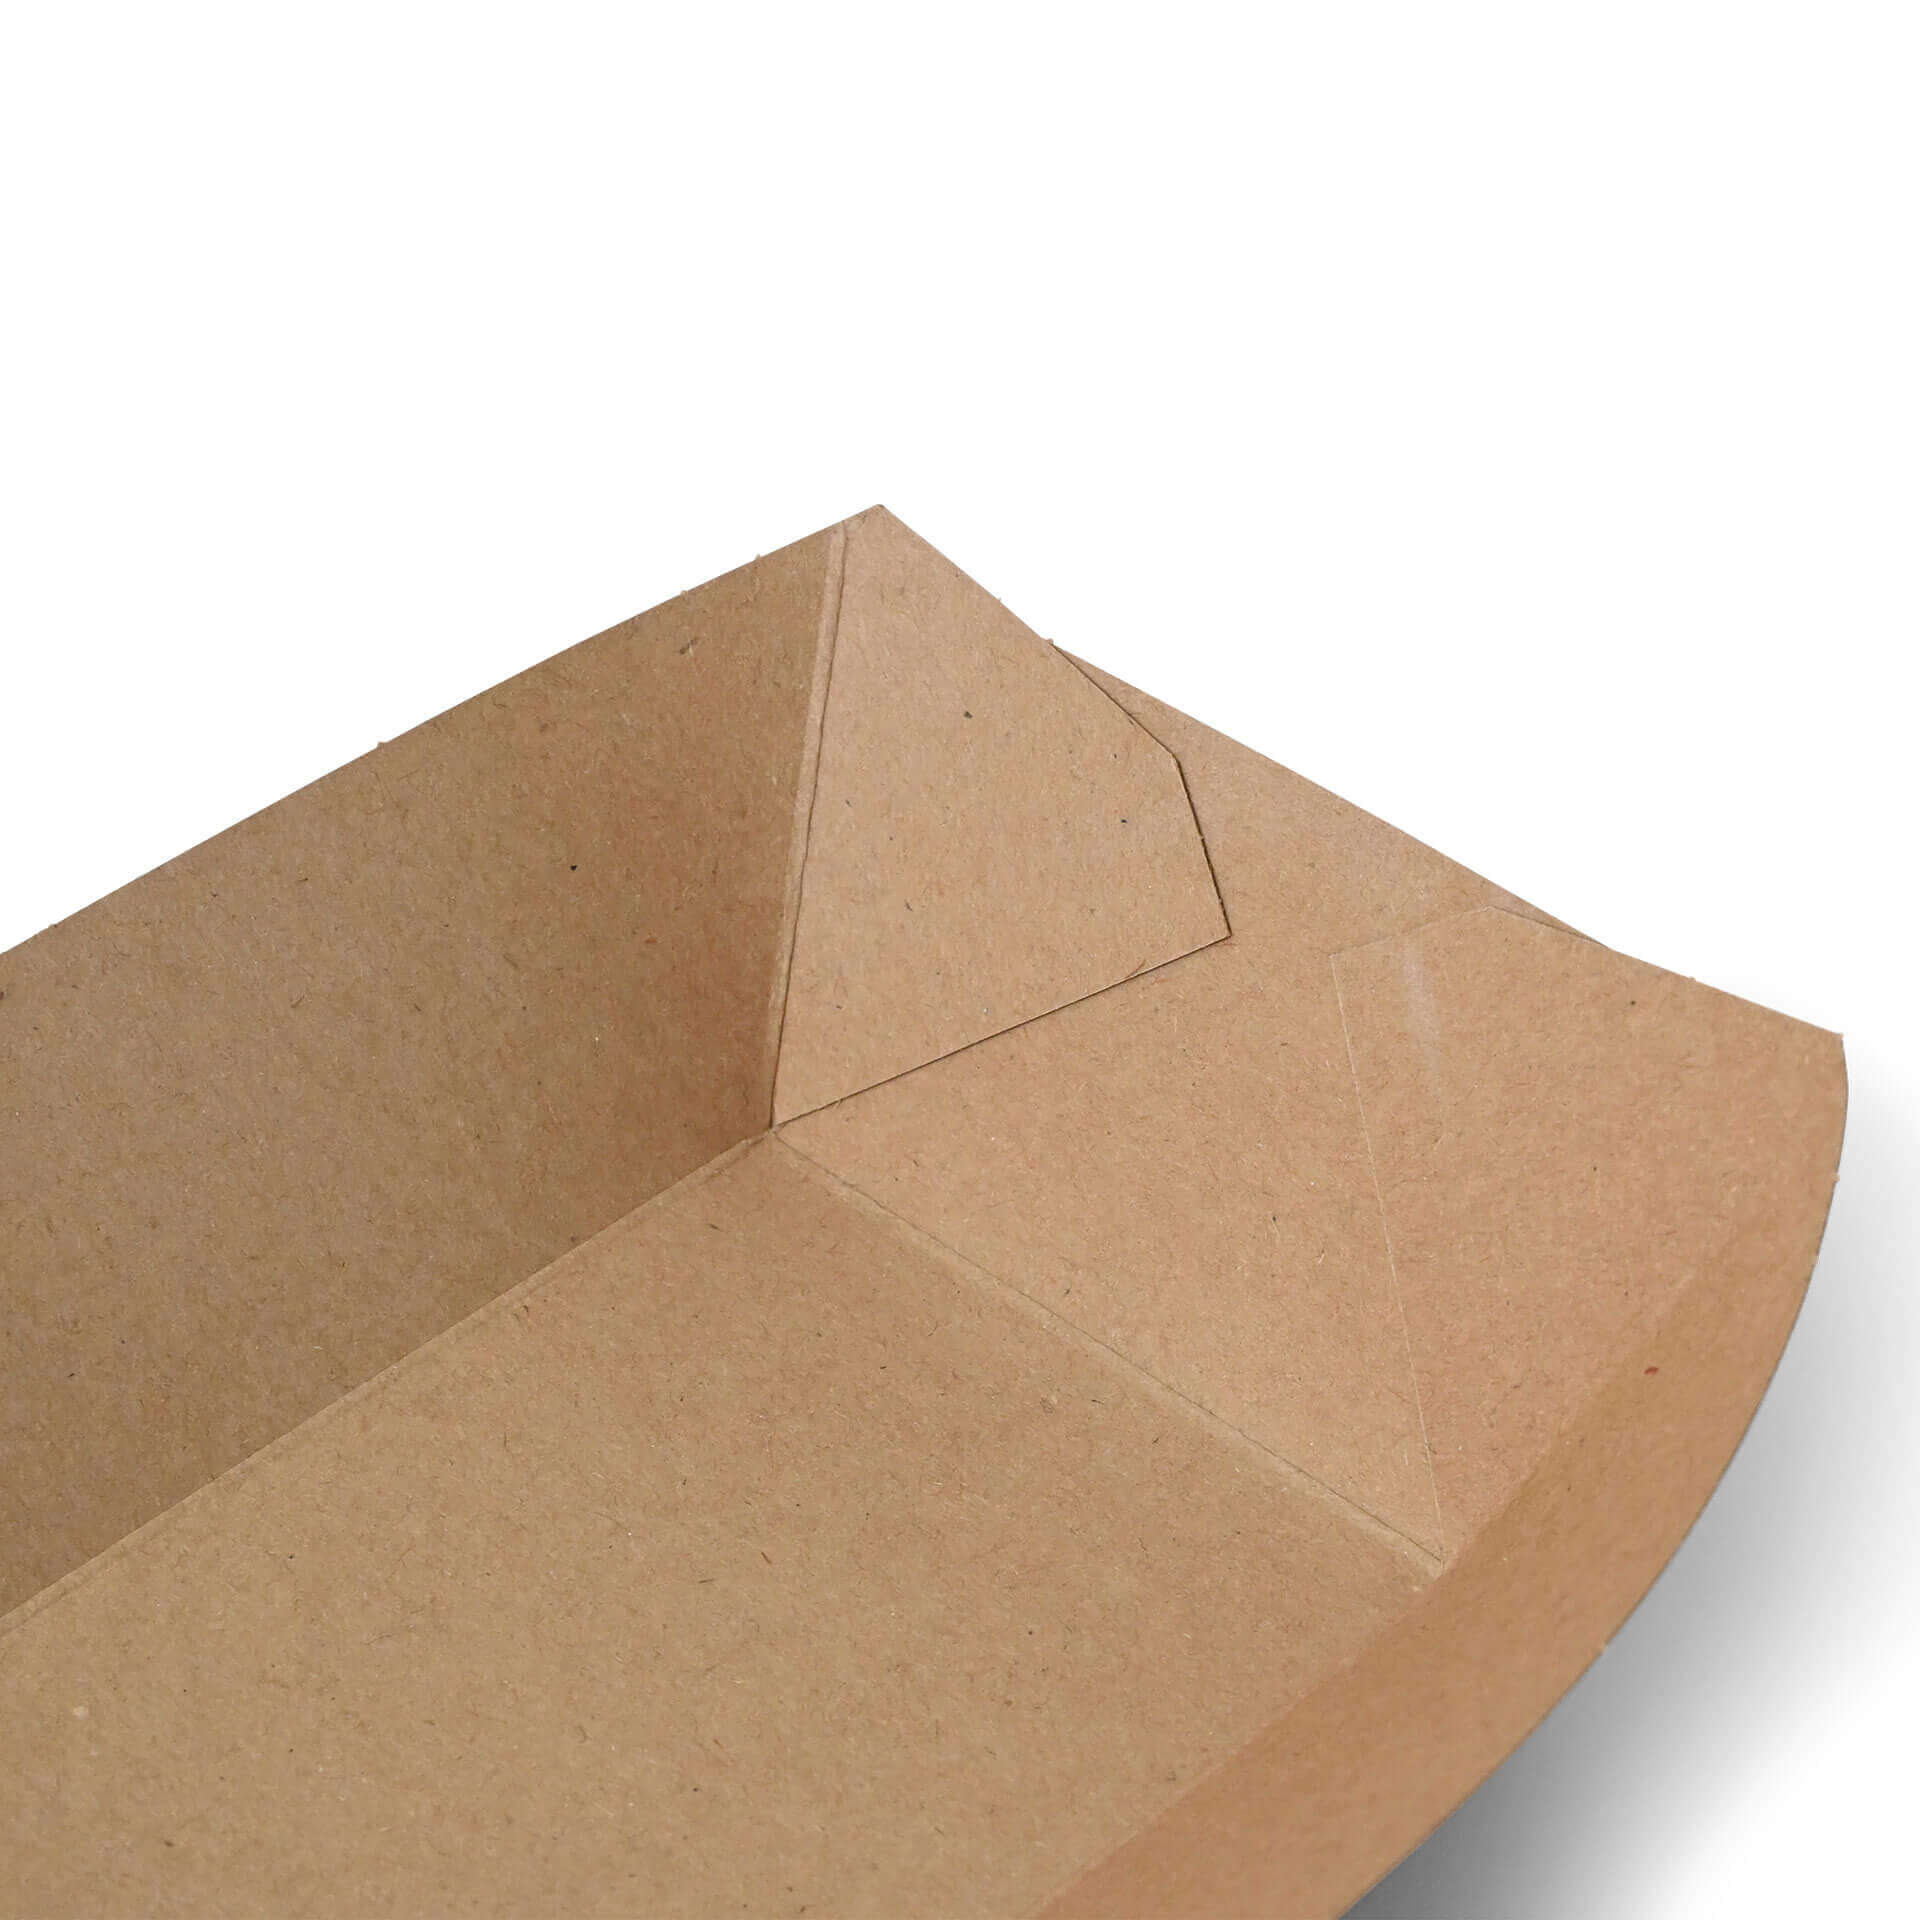 Snackschalen aus Karton (Premium) 500 ml, braun, bio-beschichtet